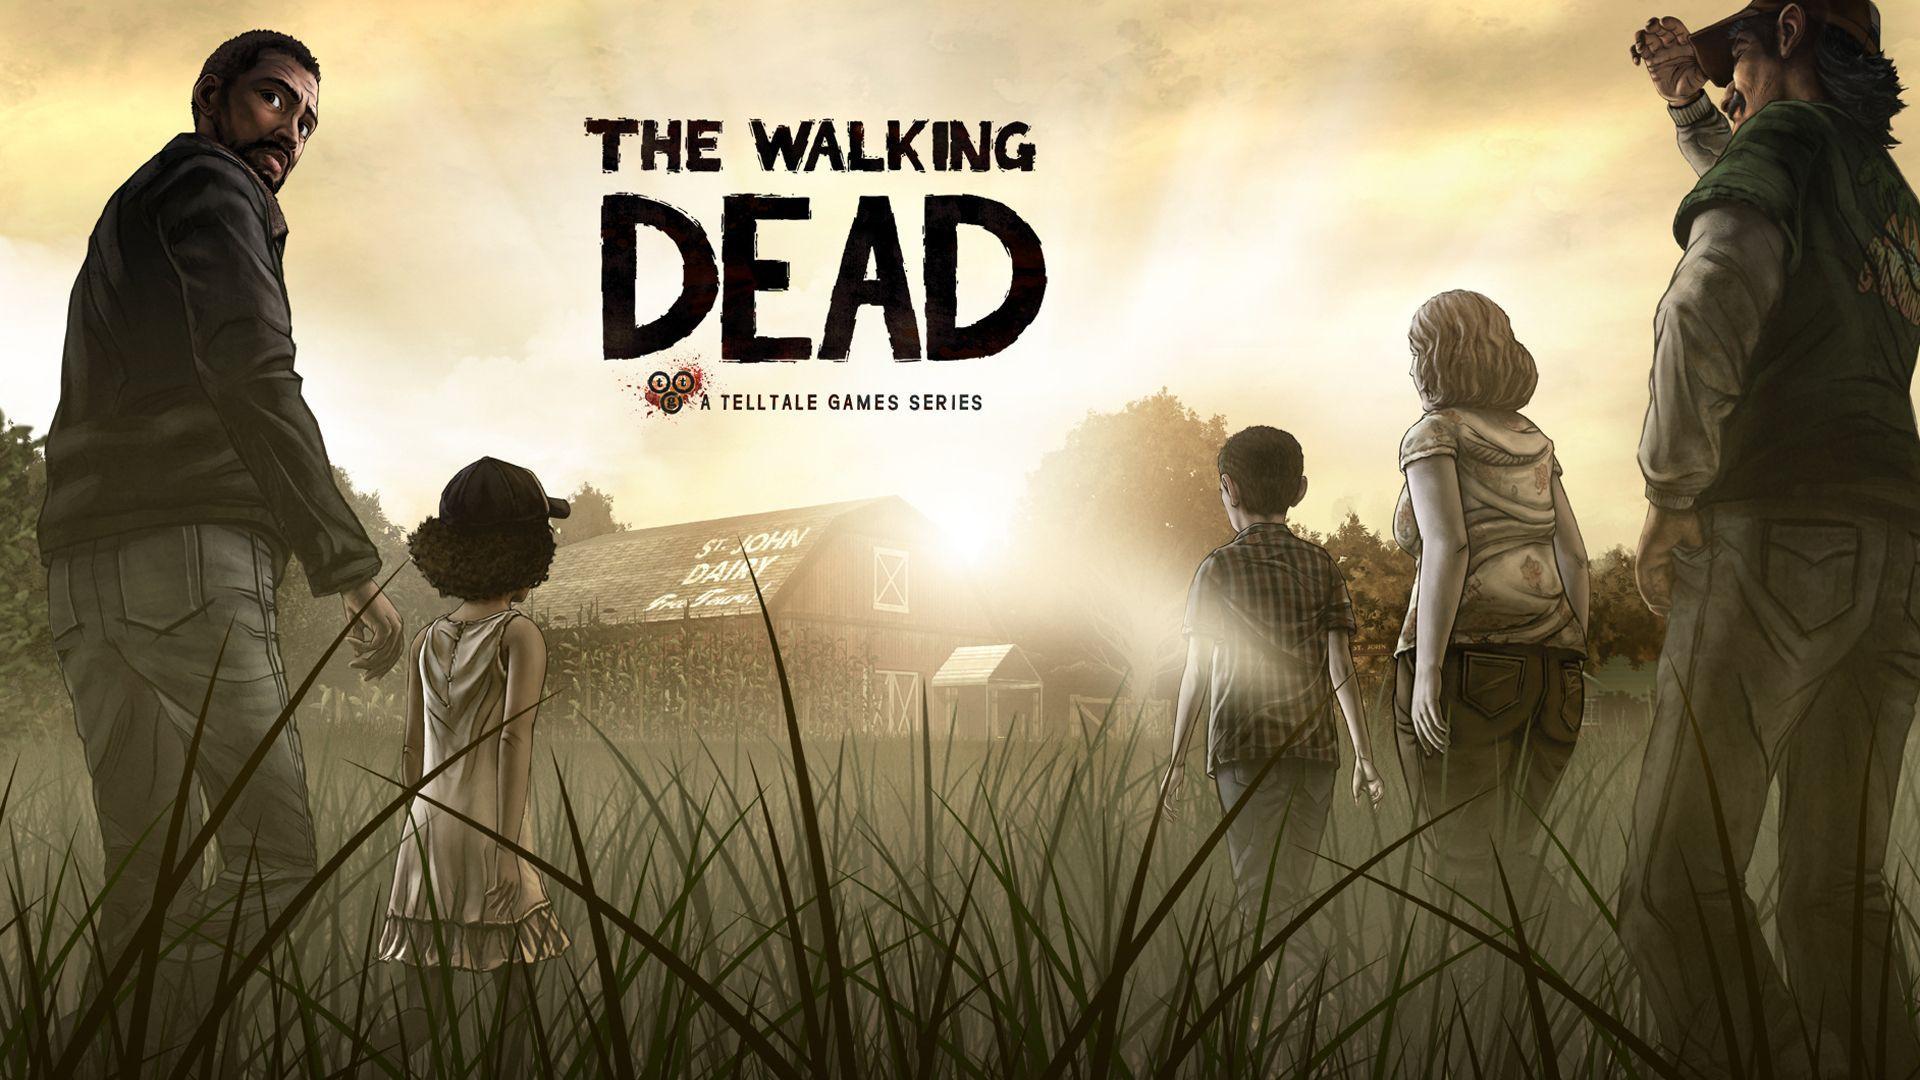 The Walking Dead #Game 3D #Wallpaper #TheWalkingDead #Wallpaper